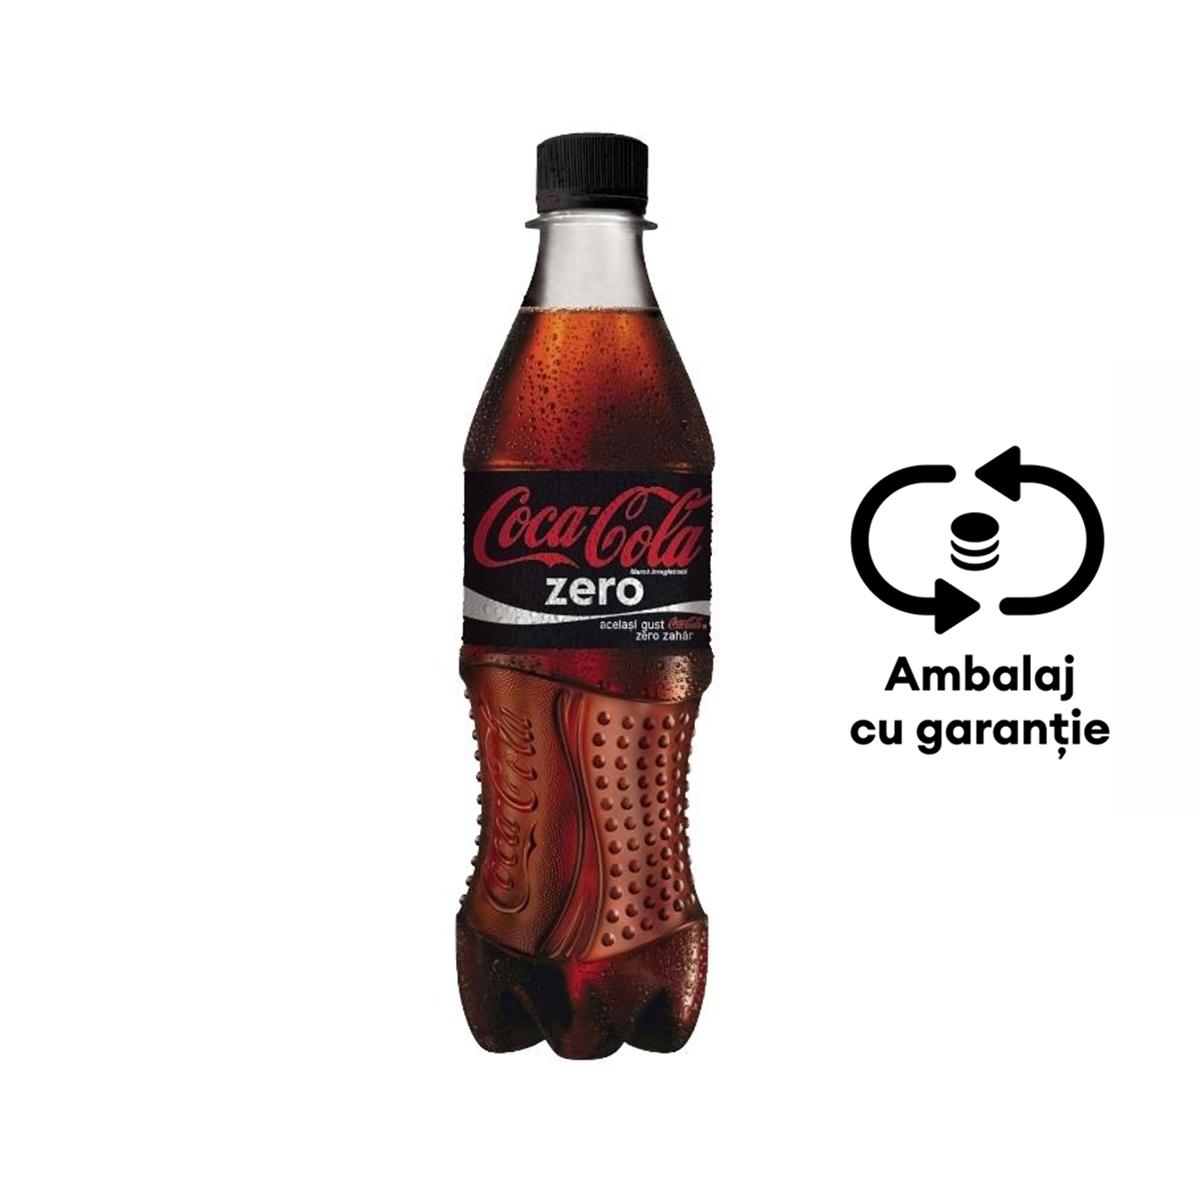 Bautura racoritoare carbogazoasa Coca-Cola Zero, 0.5 l, 12 bucati/bax, eticheta SGR